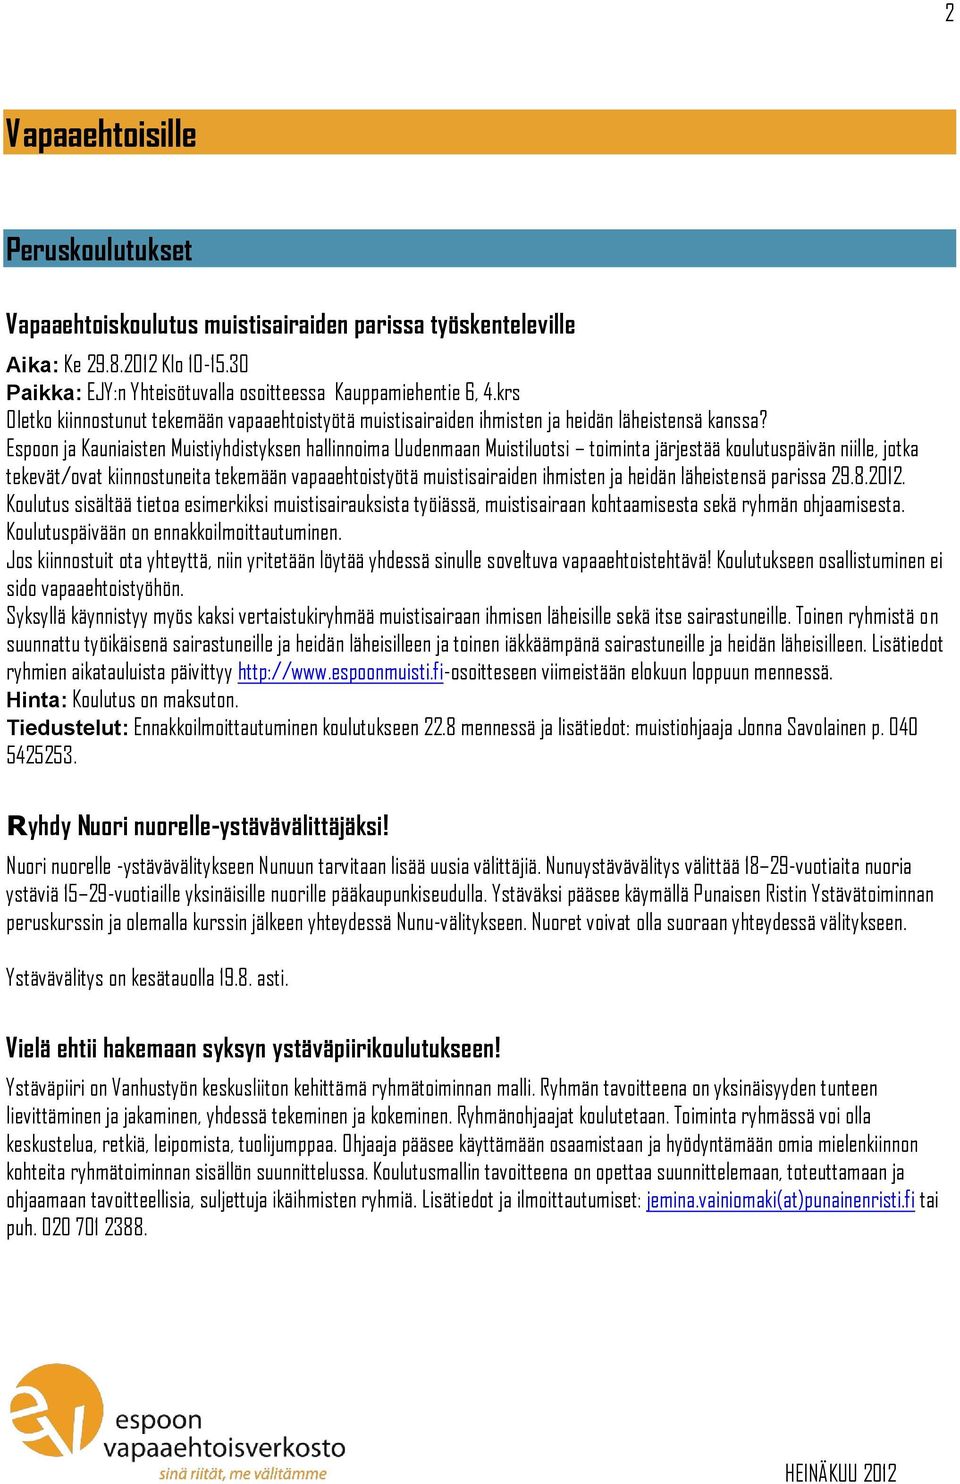 Espoon ja Kauniaisten Muistiyhdistyksen hallinnoima Uudenmaan Muistiluotsi toiminta järjestää koulutuspäivän niille, jotka tekevät/ovat kiinnostuneita tekemään vapaaehtoistyötä muistisairaiden